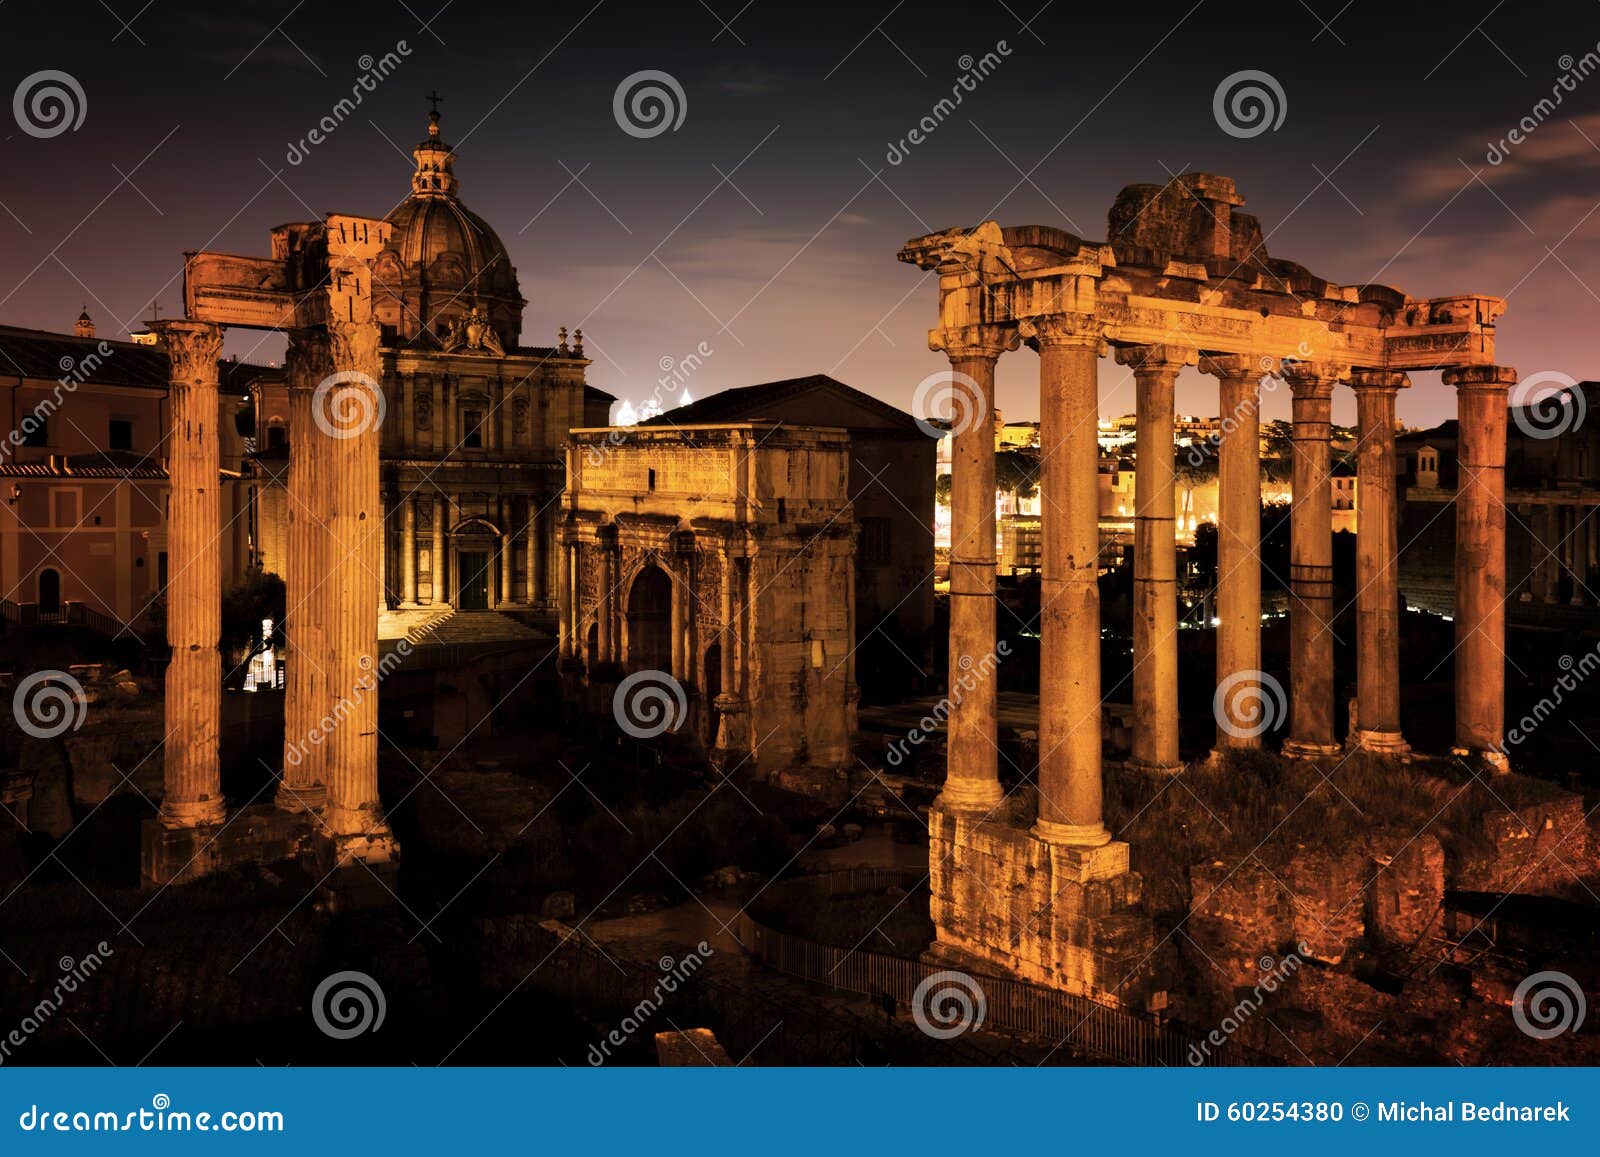 the roman forum, italian foro romano in rome, italy at night.